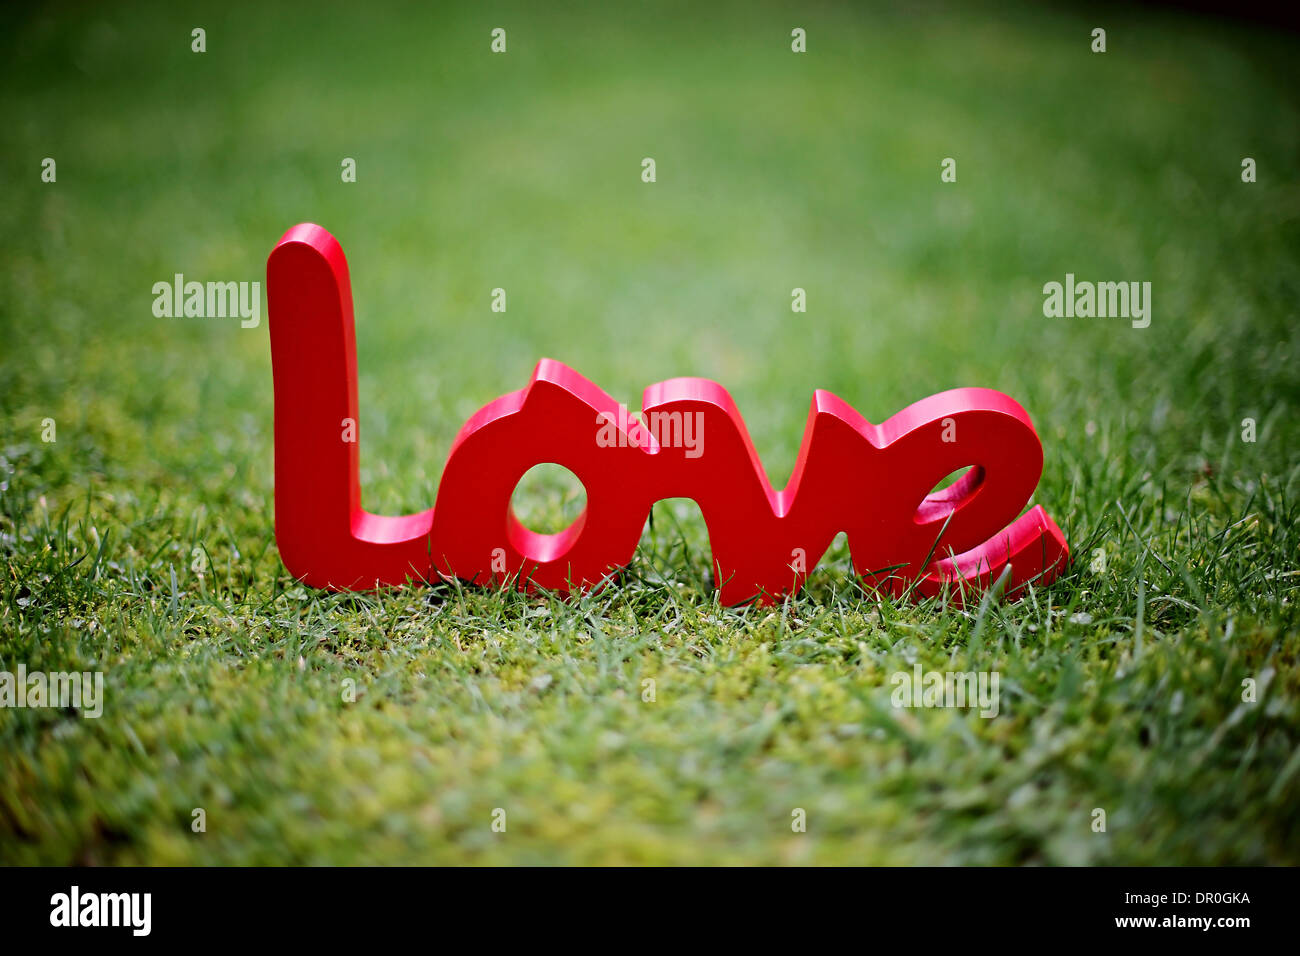 Liebe Zeichen im Bild auf dem Rasen Stockfoto